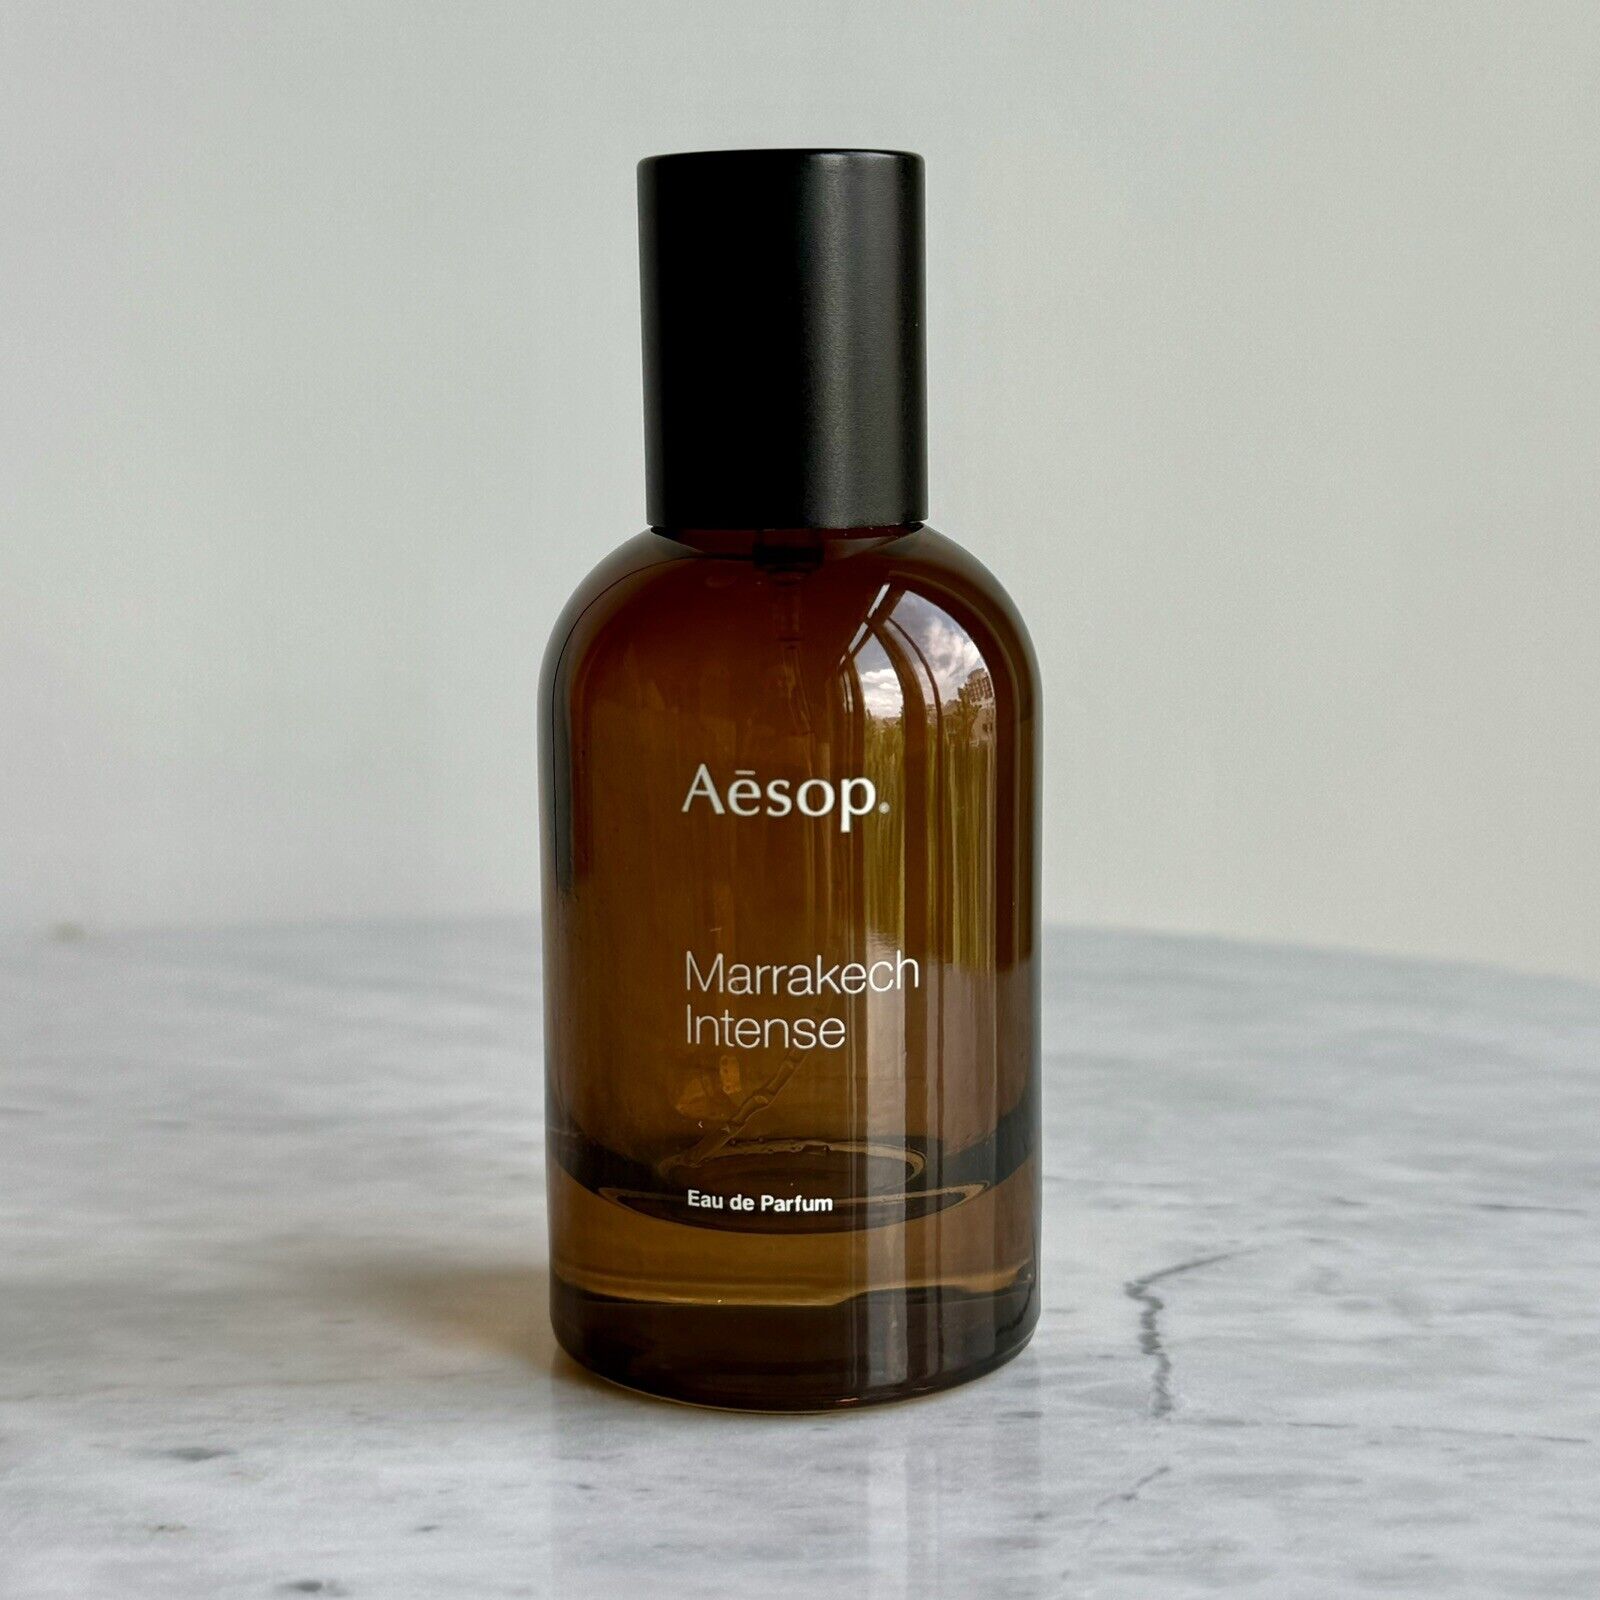 AESOP Marrakech Intense 50ml 1.7 fl oz Eau de Parfum - Empty Bottle